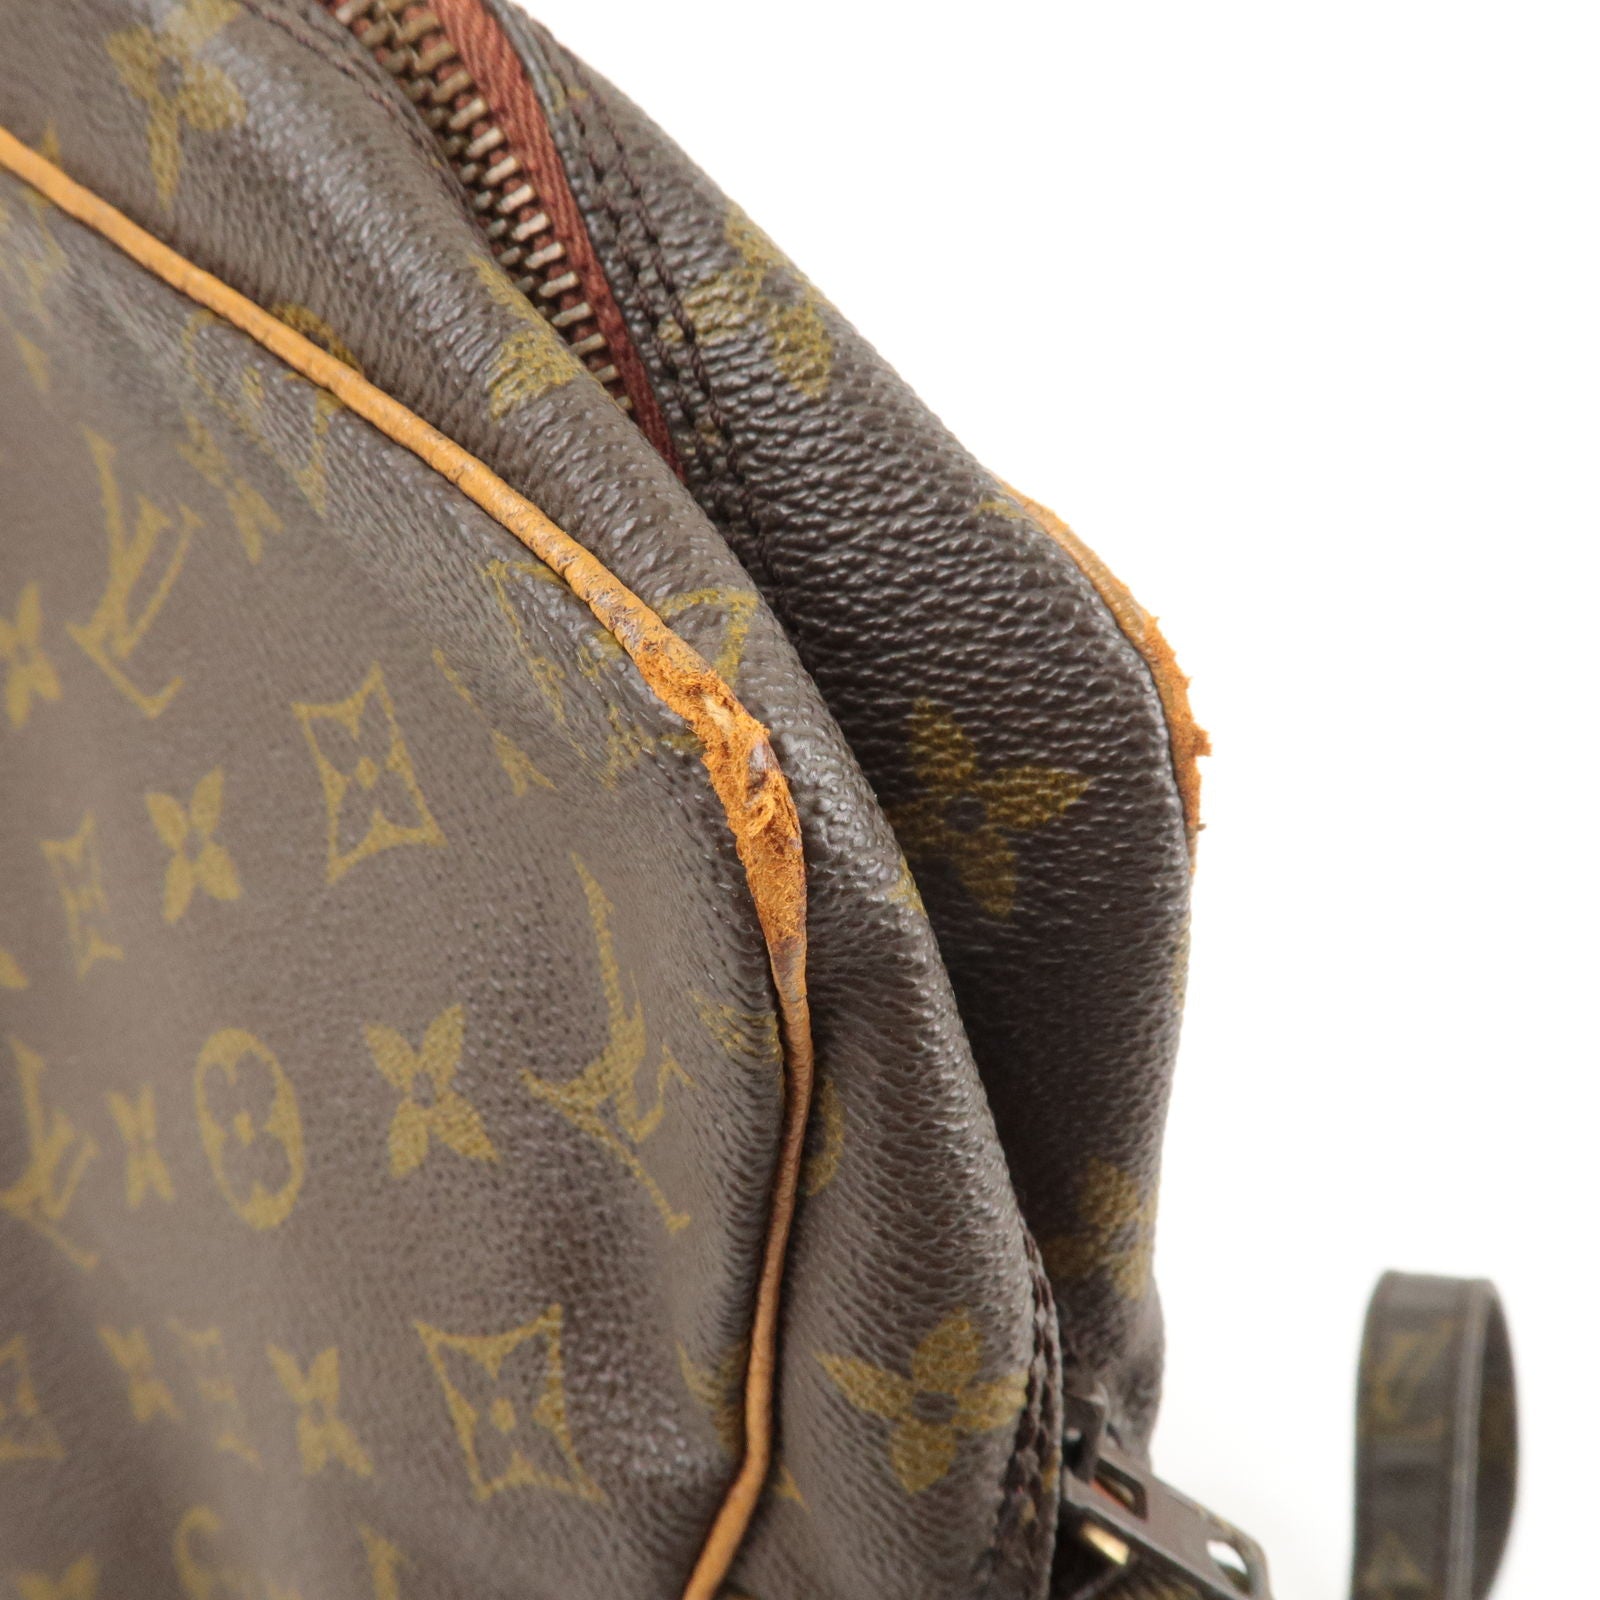 LOUIS VUITTON Marceau Shoulder Bag Monogram Leather Brown France